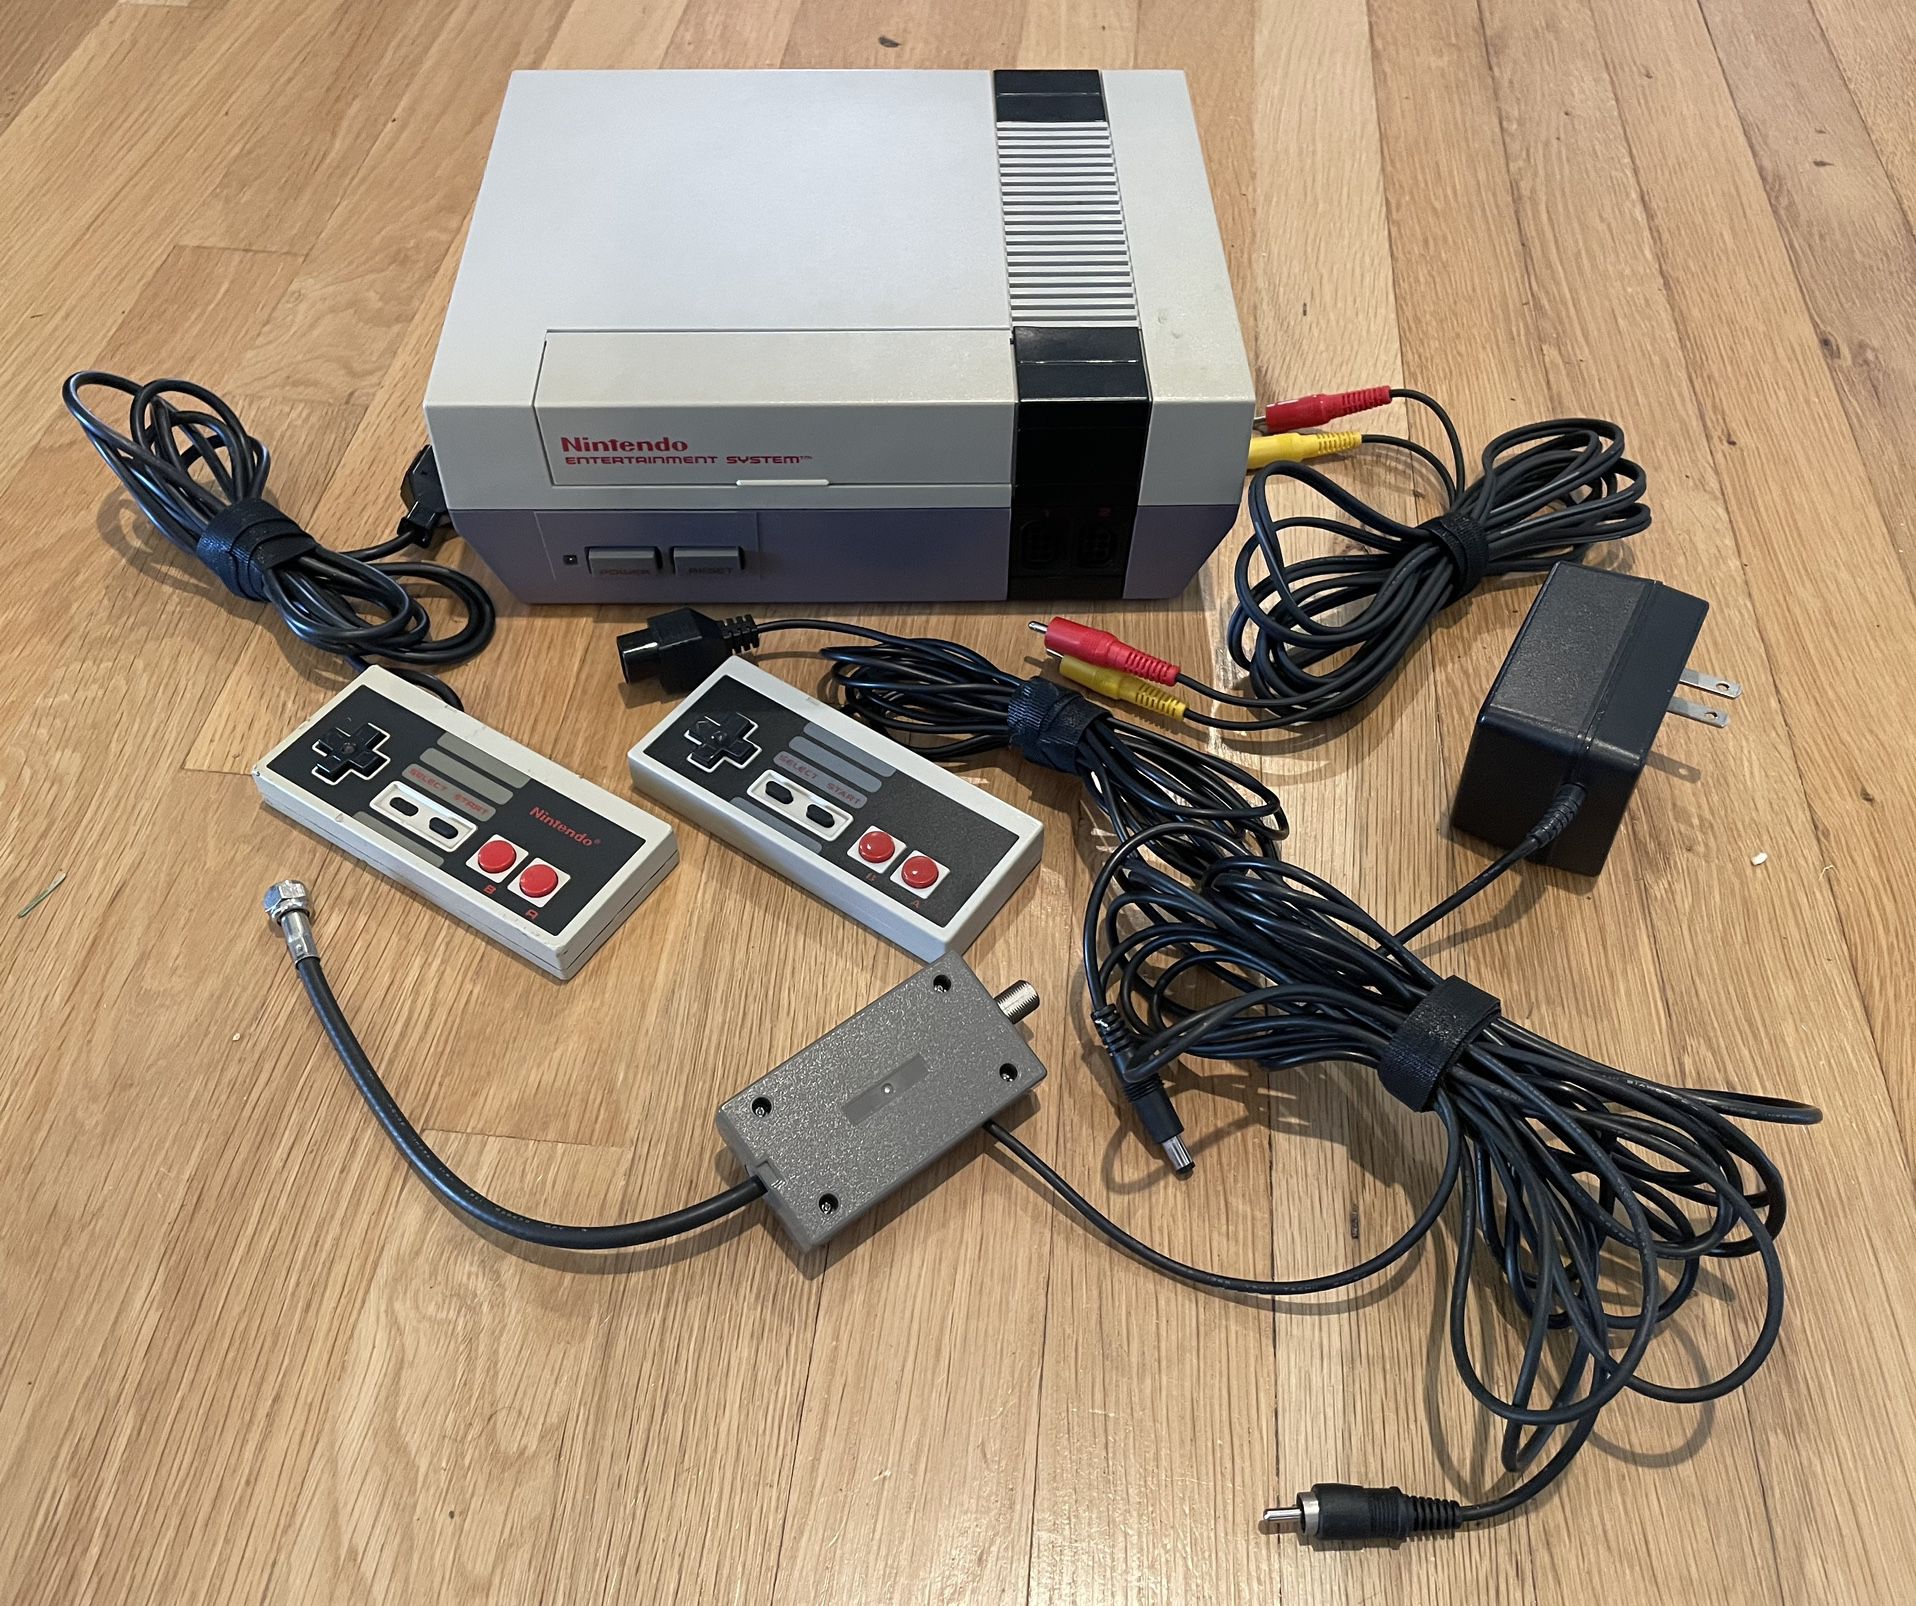 Original Nintendo Entertainment System (NES) With Games